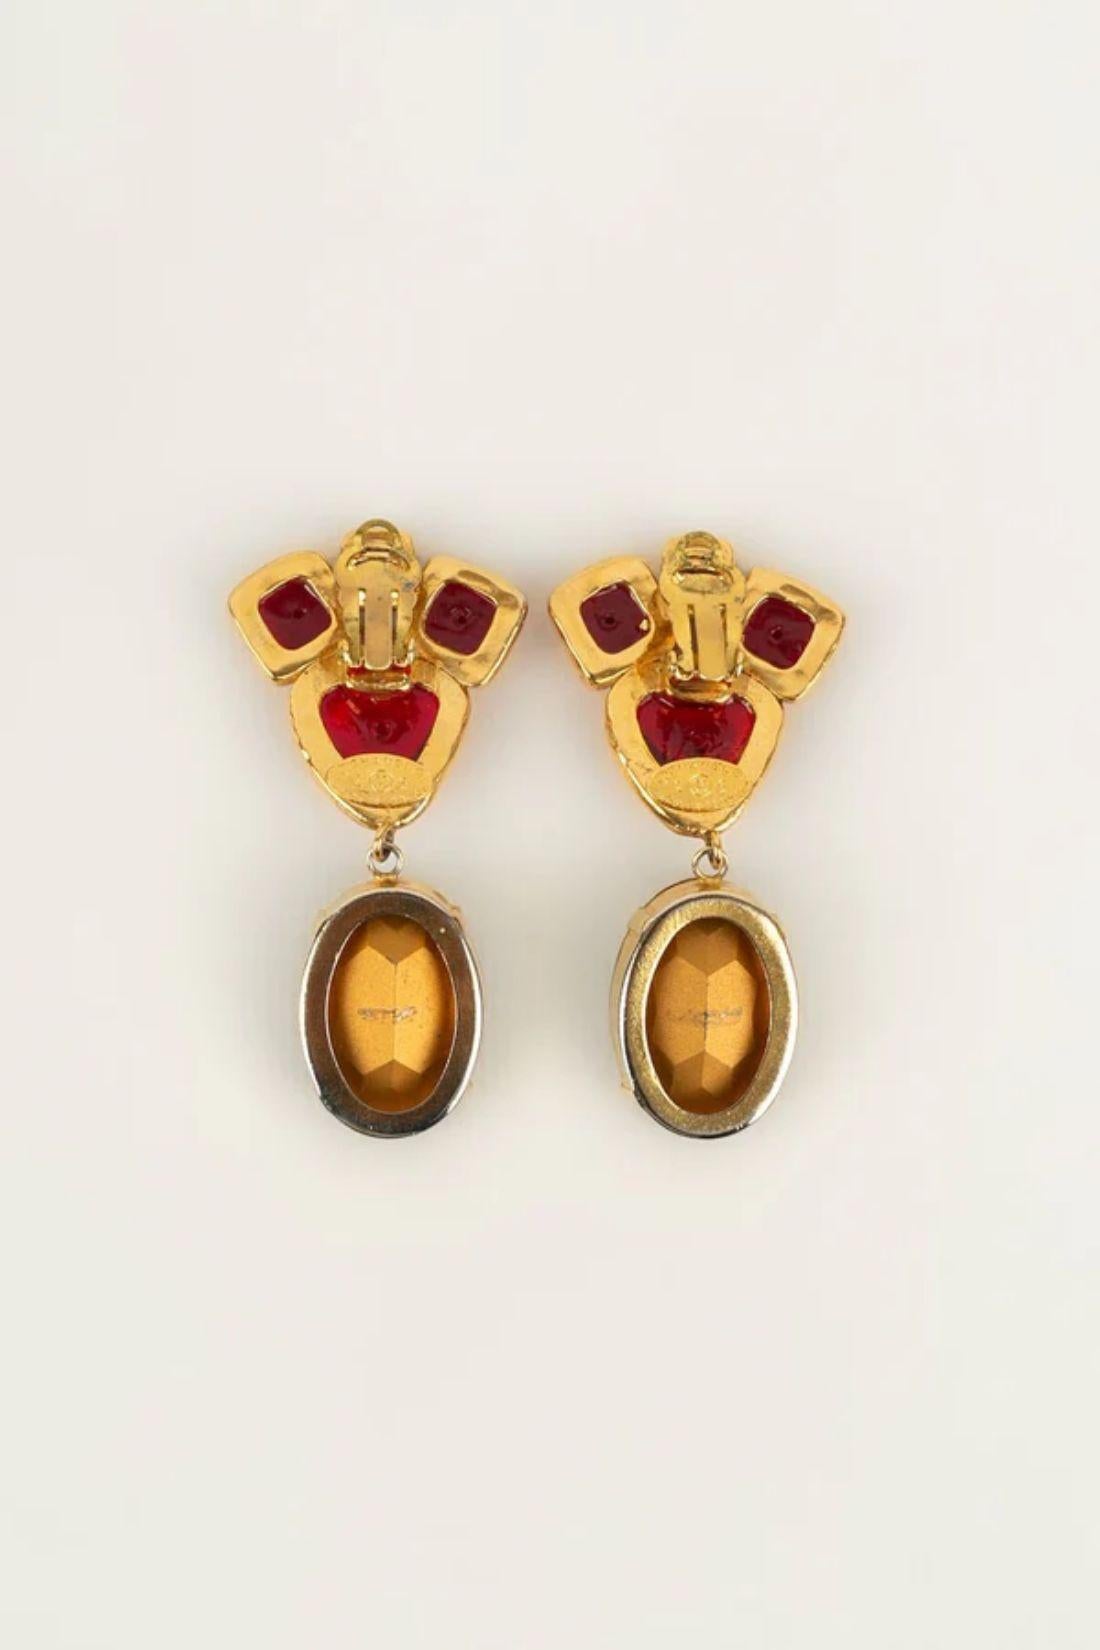 Chanel - (Made in France) Ohrringe aus goldenem Metall und Glaspaste. Collection'S 2cc6.

Zusätzliche Informationen:
Abmessungen: 7 L cm
Zustand: Sehr guter Zustand
Verkäufer Ref Nummer: BOB85